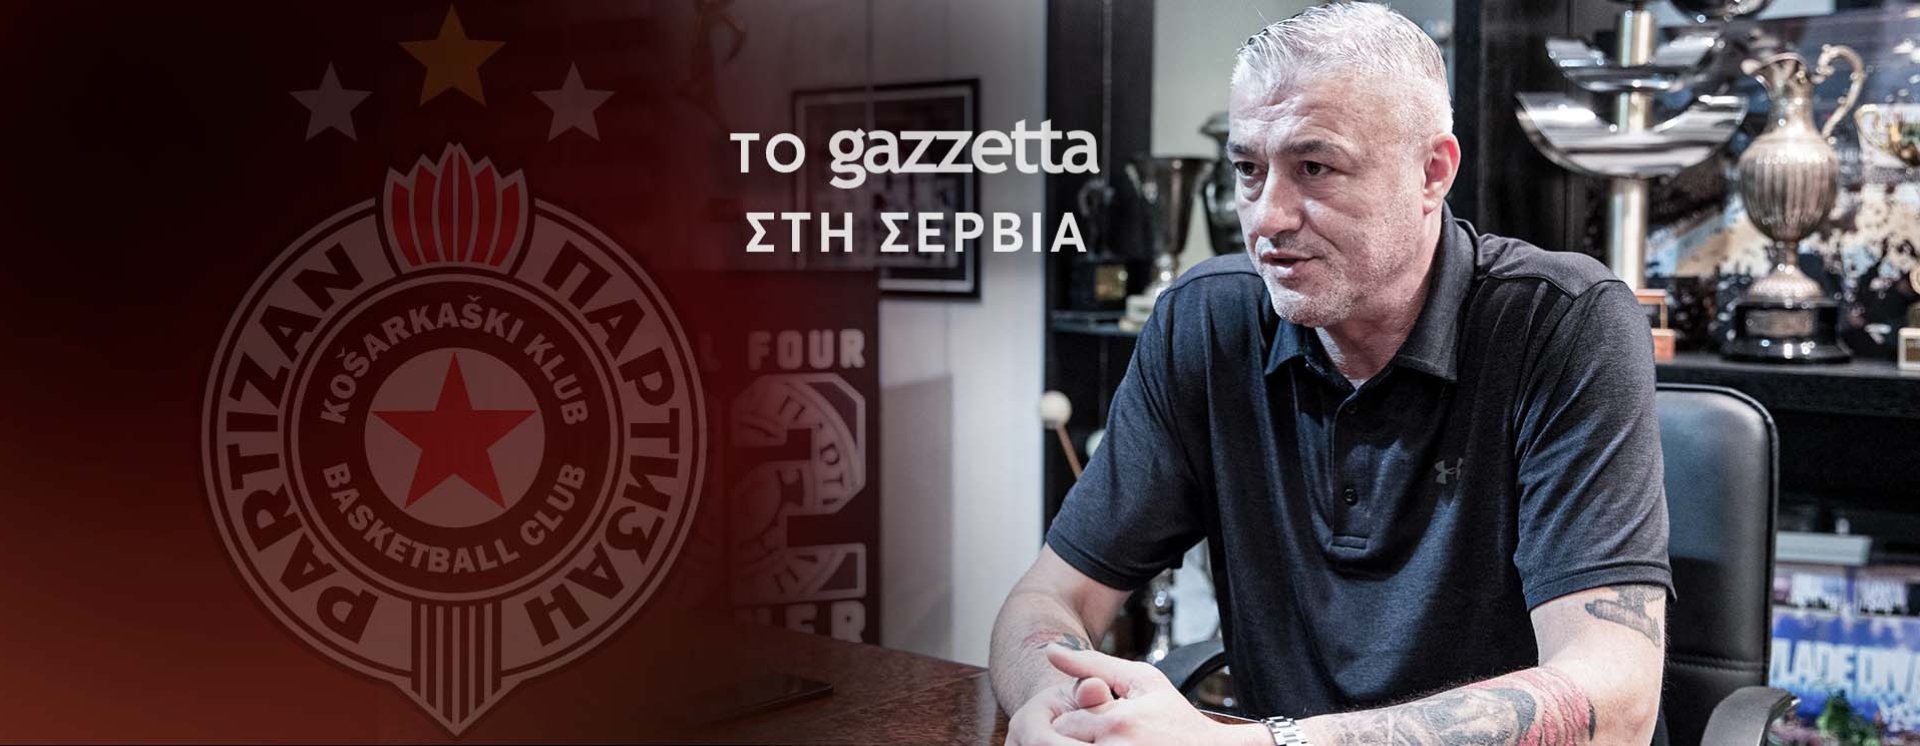 Ντανίλοβιτς στο Gazzetta: «Δεν υπήρχε καλύτερο δίδυμο στην Ευρώπη από εμένα και τον Τζόρτζεβιτς»!